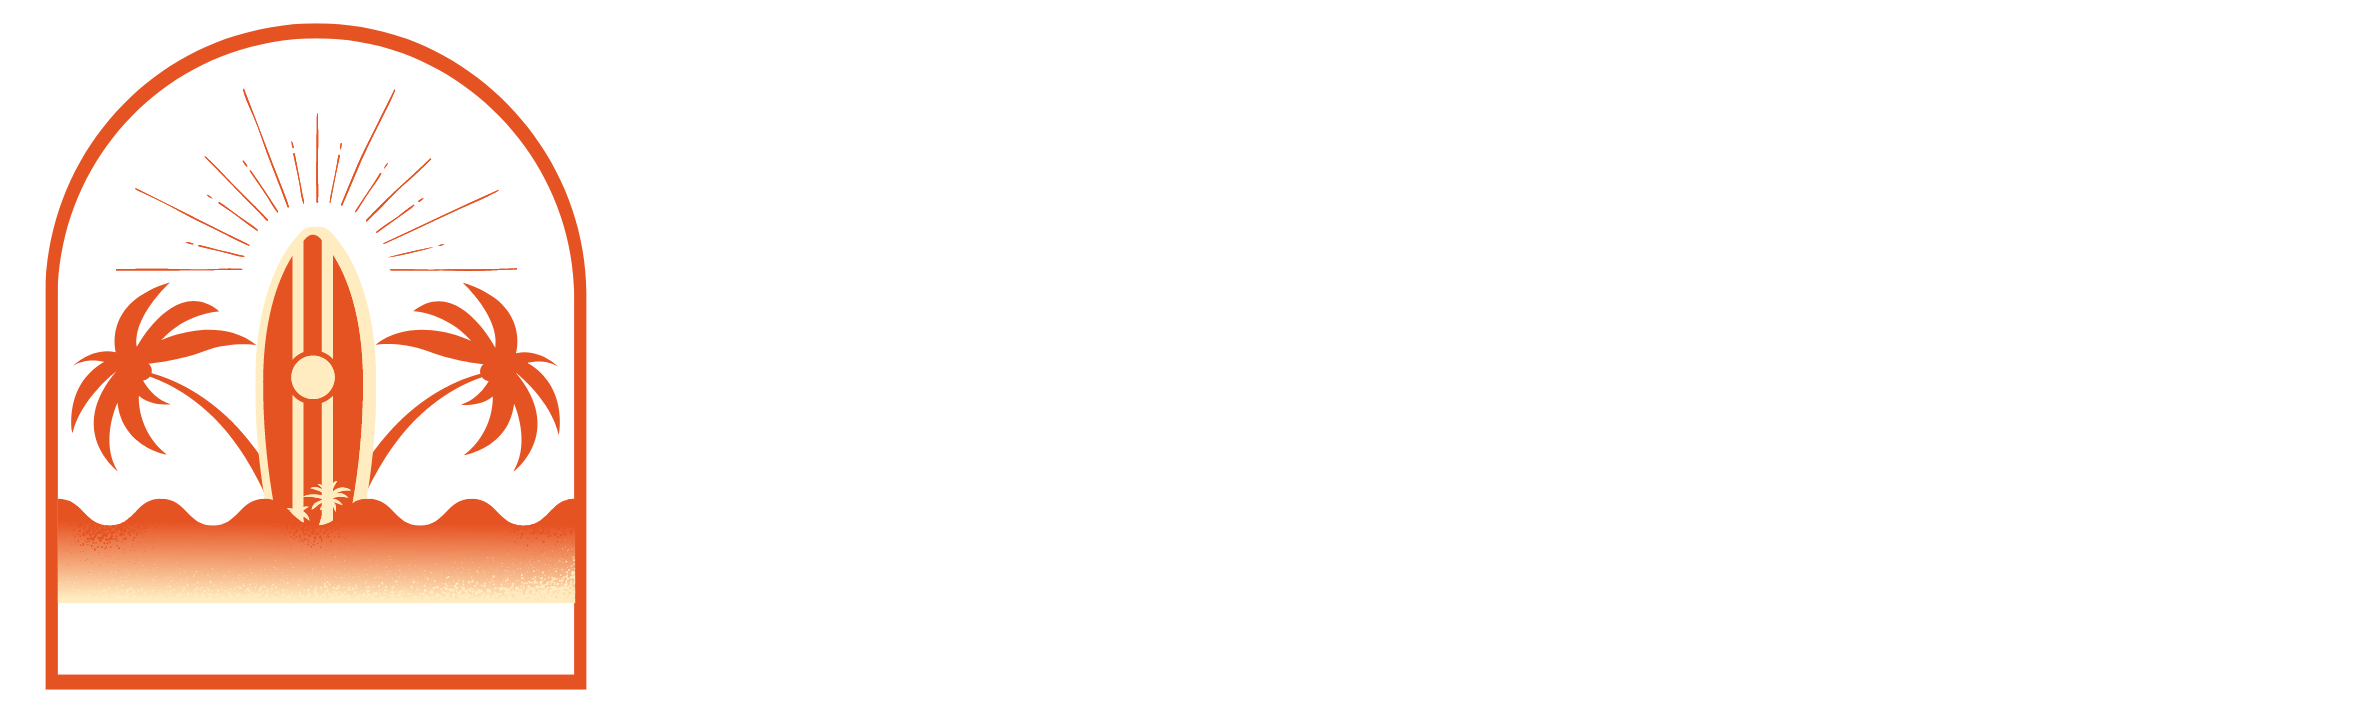 logo wave games 2